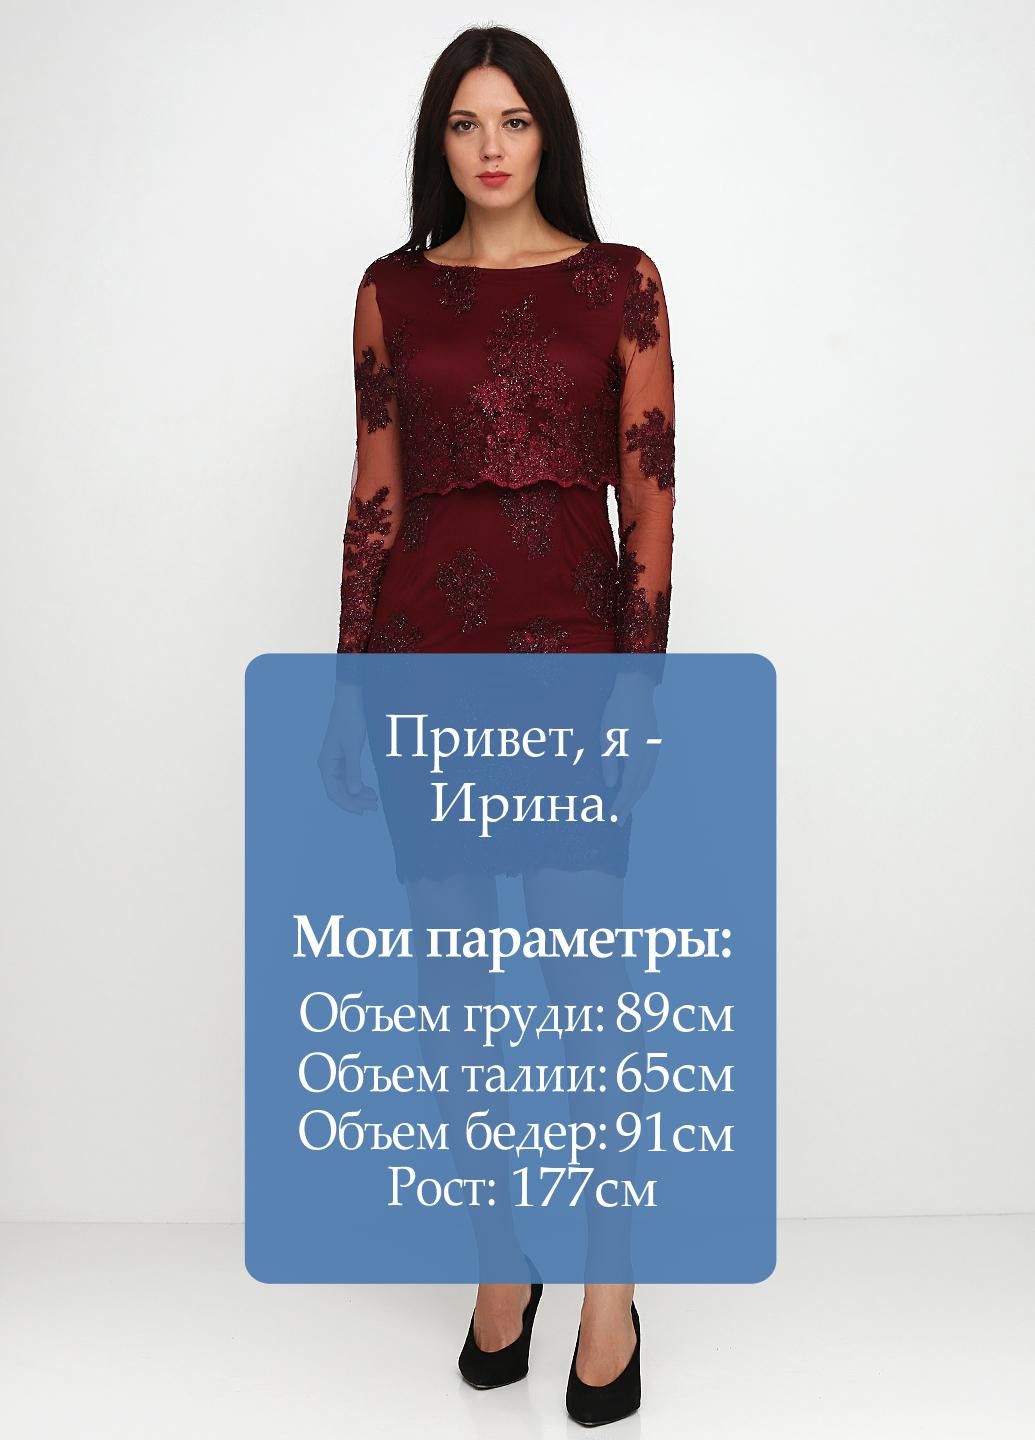 Бордовое коктейльное платье футляр Allyson Collection фактурное